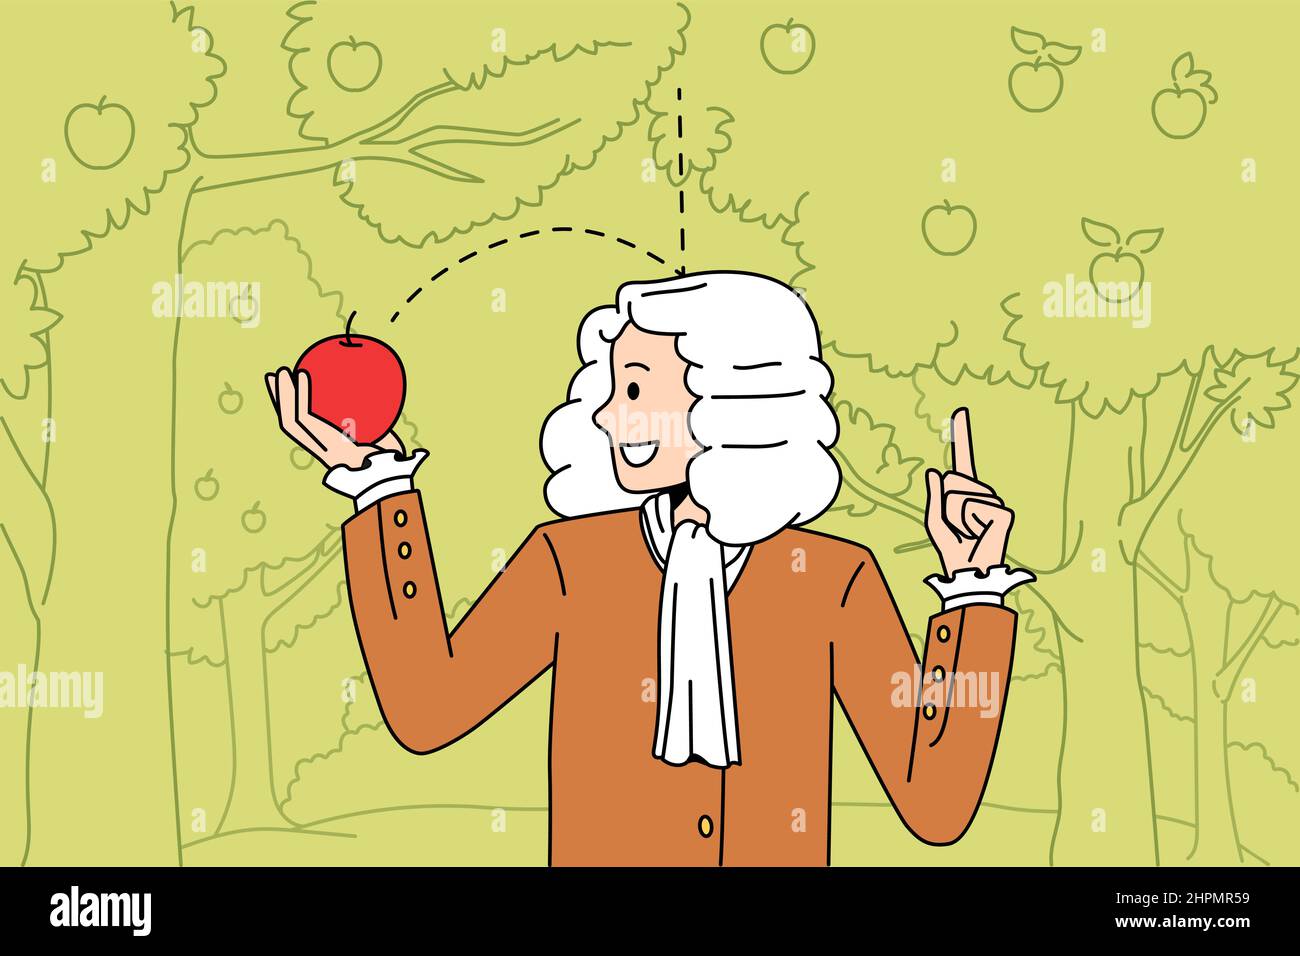 Wissenschaft und körperliche Erfahrung Konzept. Sir Isaac Newton Wissenschaftler stehen und erkunden die Schwerkraft mit rot gefallener Apfel in den Händen Vektor-Illustration Stock Vektor